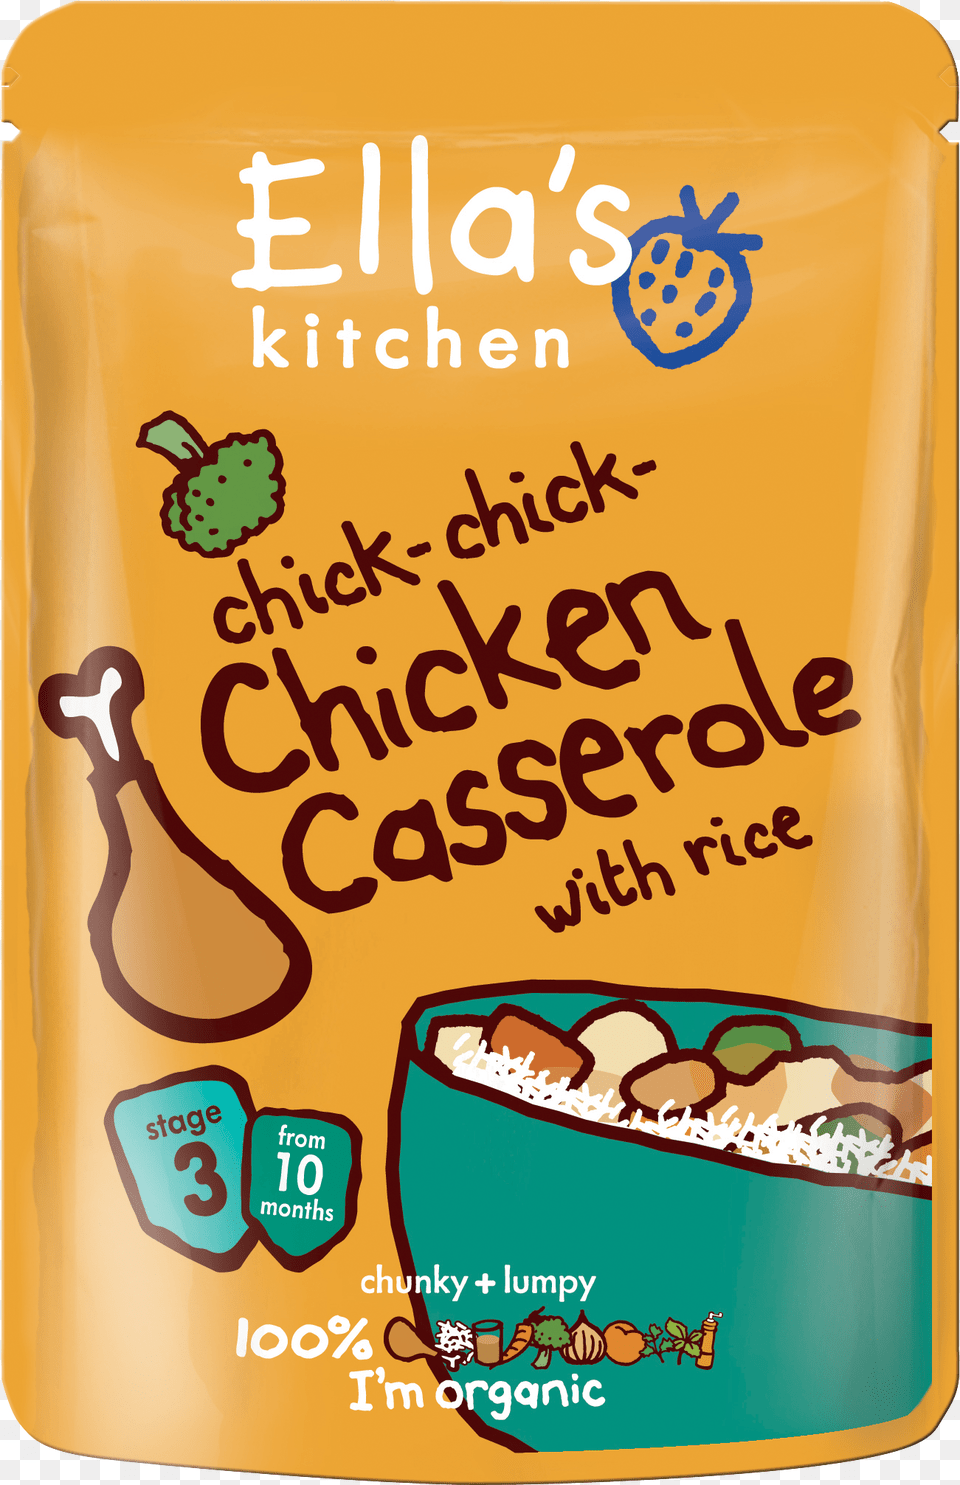 Chicken Casserole Ellas Kitchen Chicken Casserole, Advertisement, Poster, Food, Snack Free Transparent Png